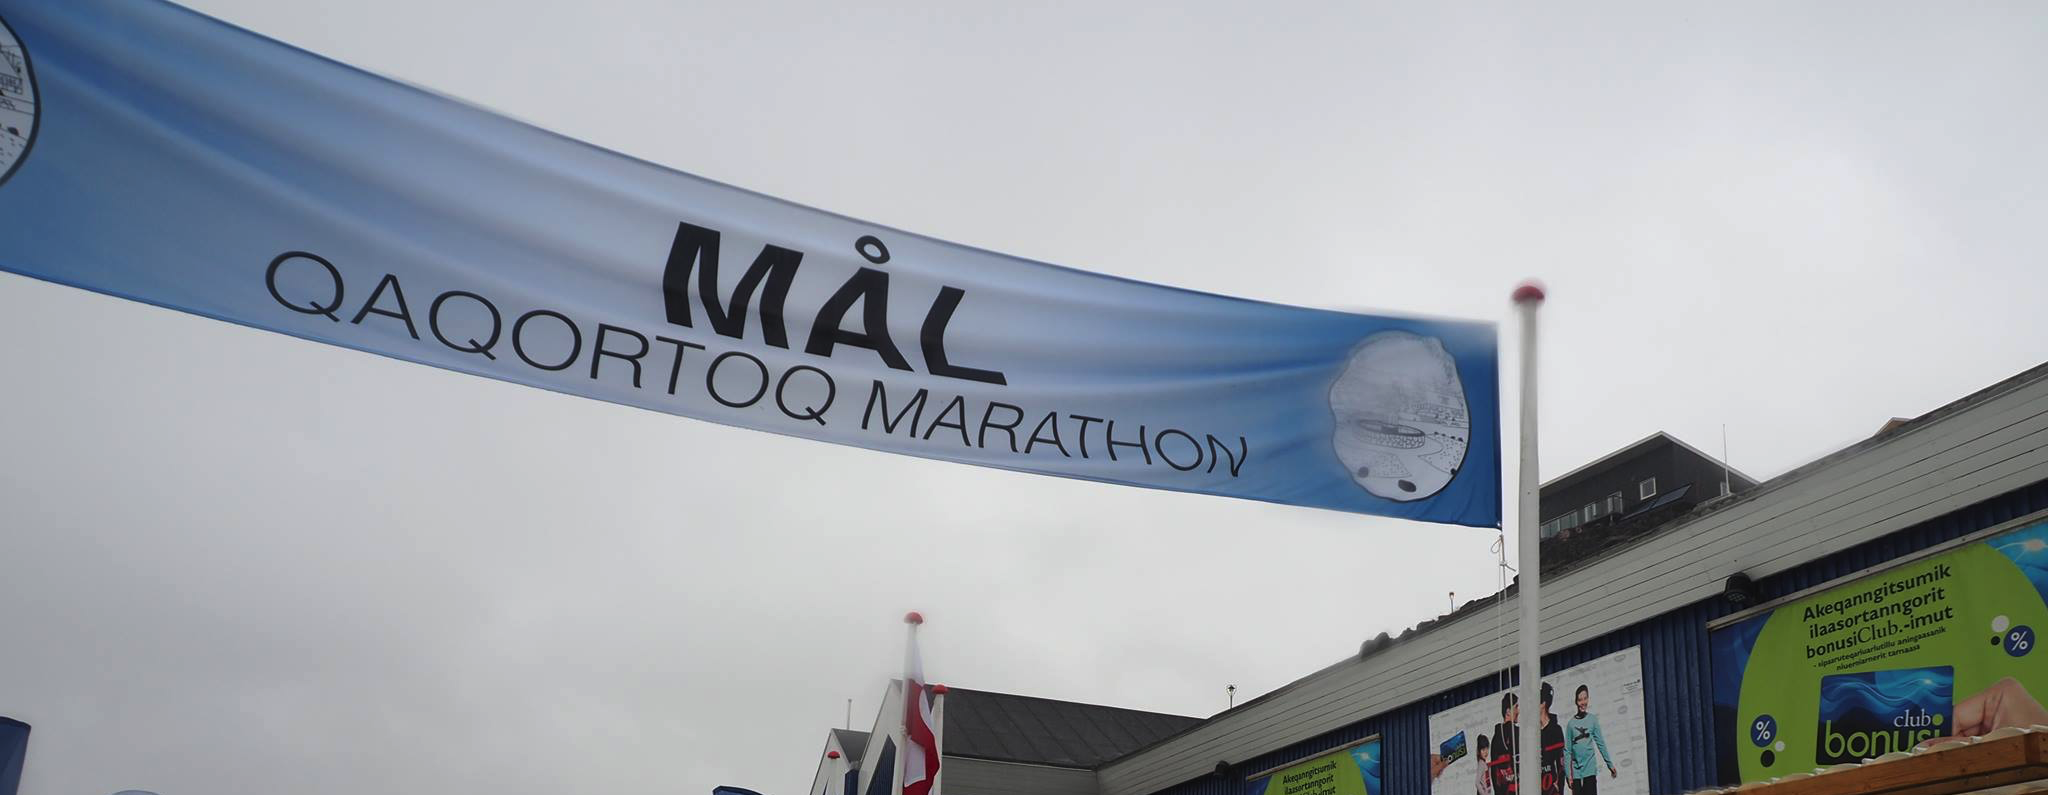 Qaqortoq Marathon 2021